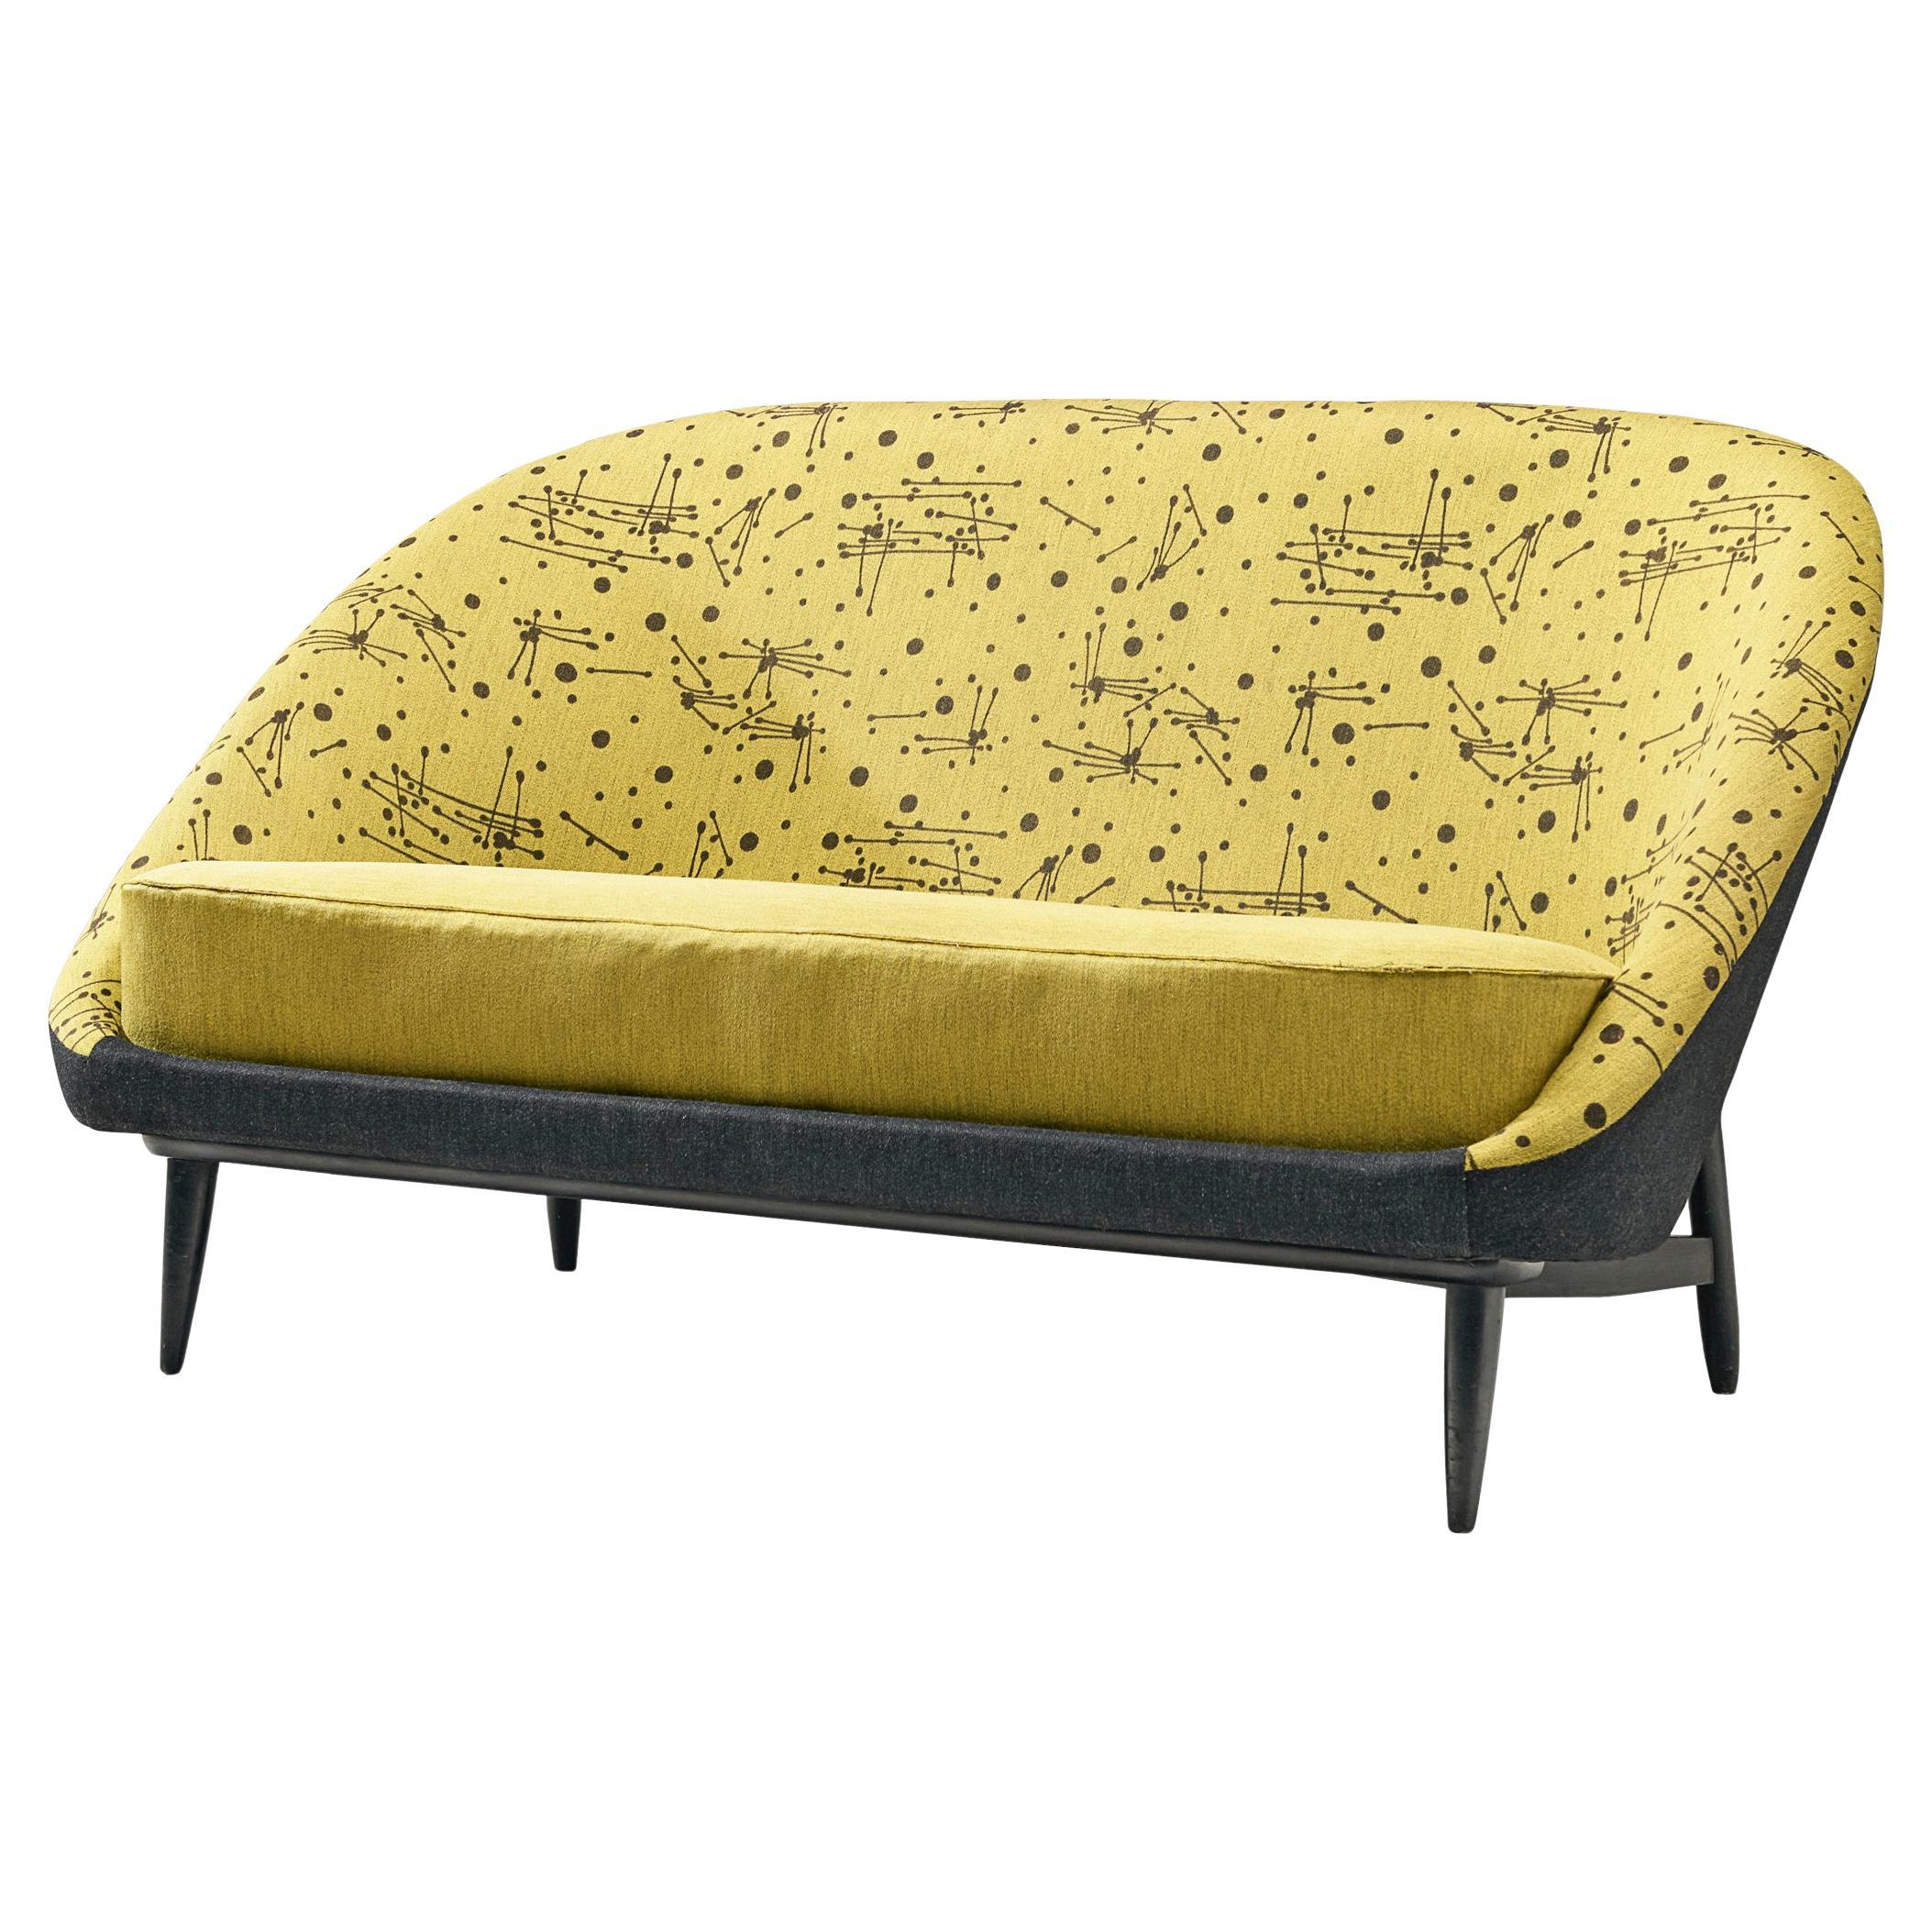 Theo Ruth für Artifort Sofa mit gelber und schwarzer Polsterung 